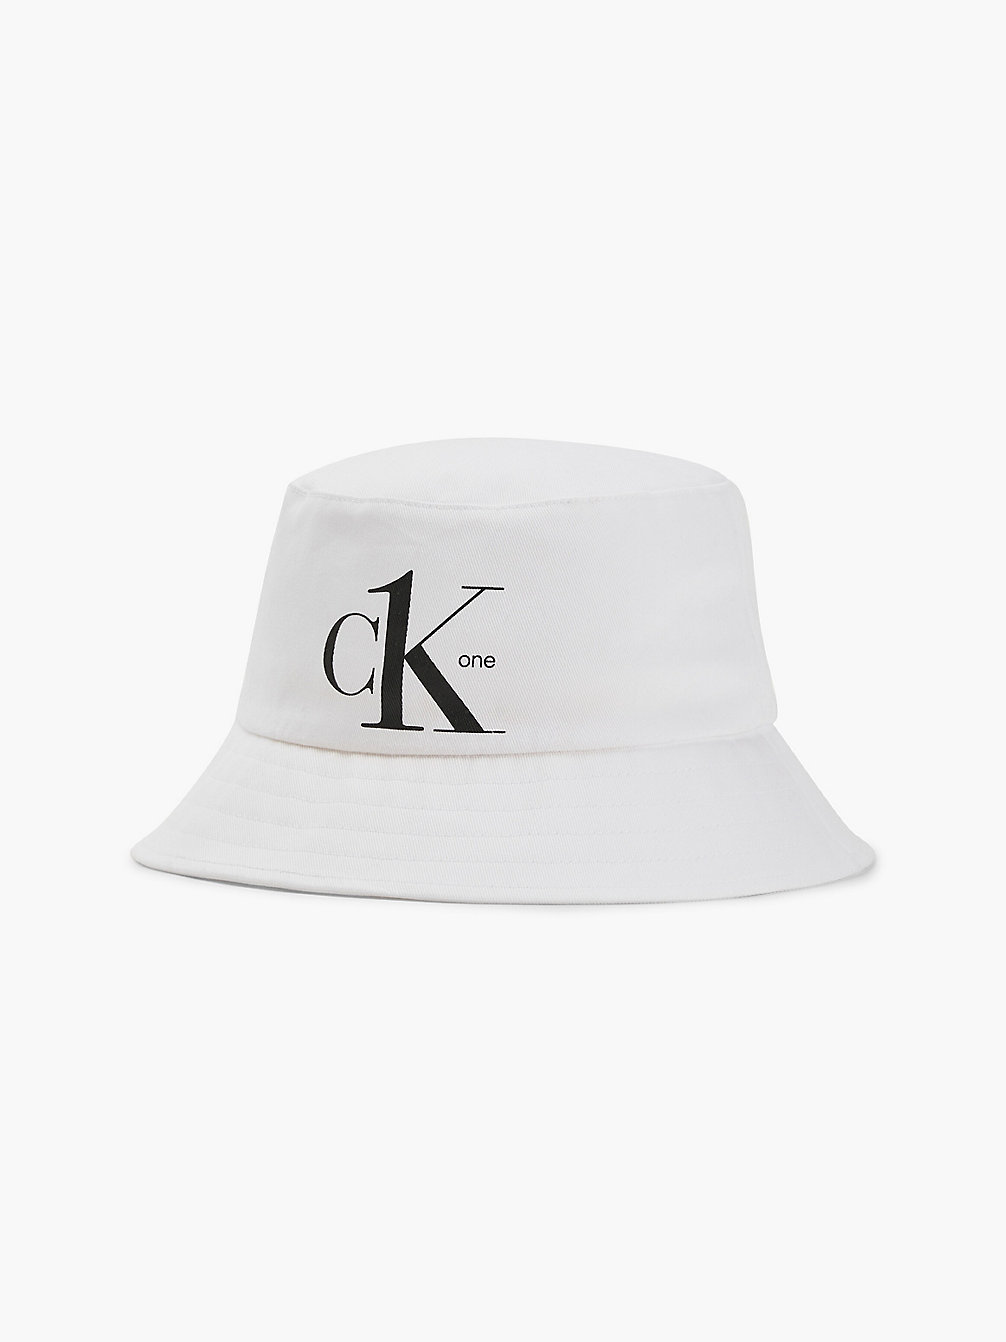 PVH CLASSIC WHITE Organic Cotton Bucket Hat - CK One undefined unisex Calvin Klein